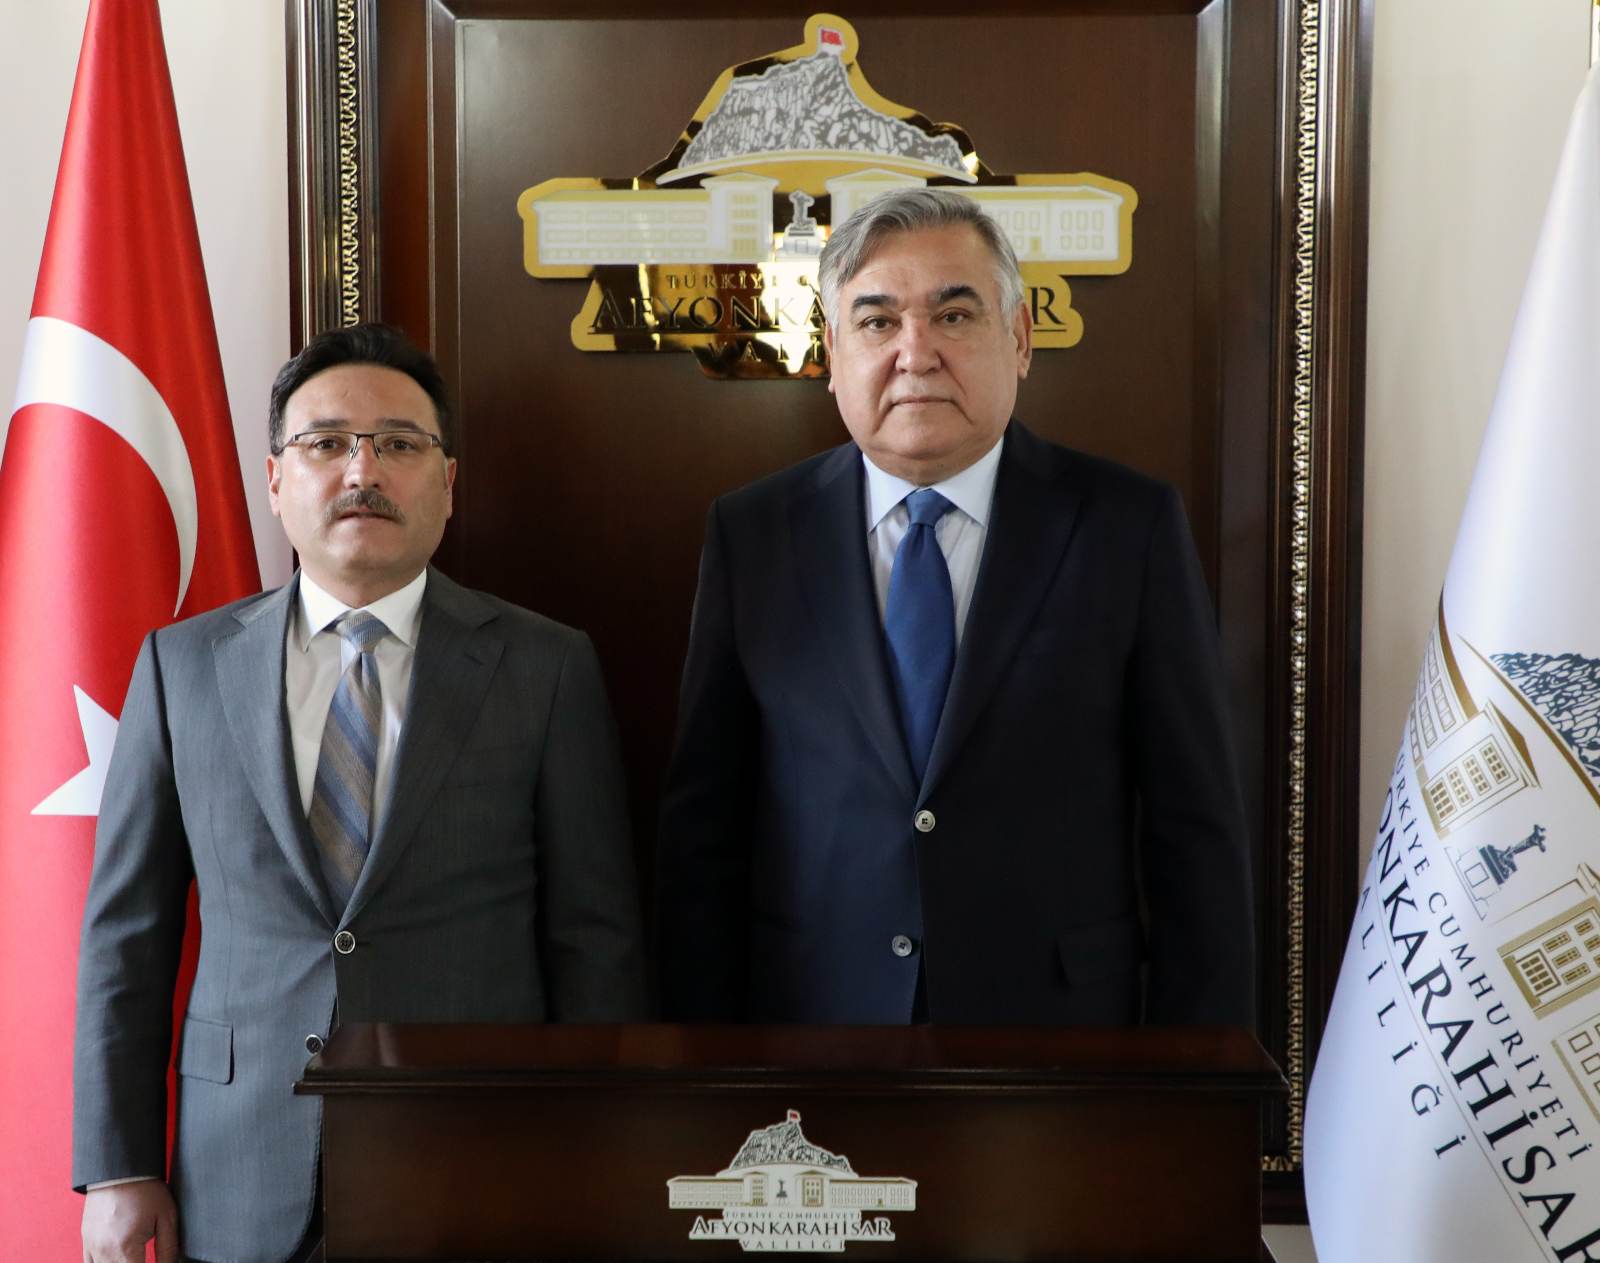 Özbekistan Büyükelçisi Alişer Azamhocayev, Vali Gökmen Çiçek’i Ziyaret Etti